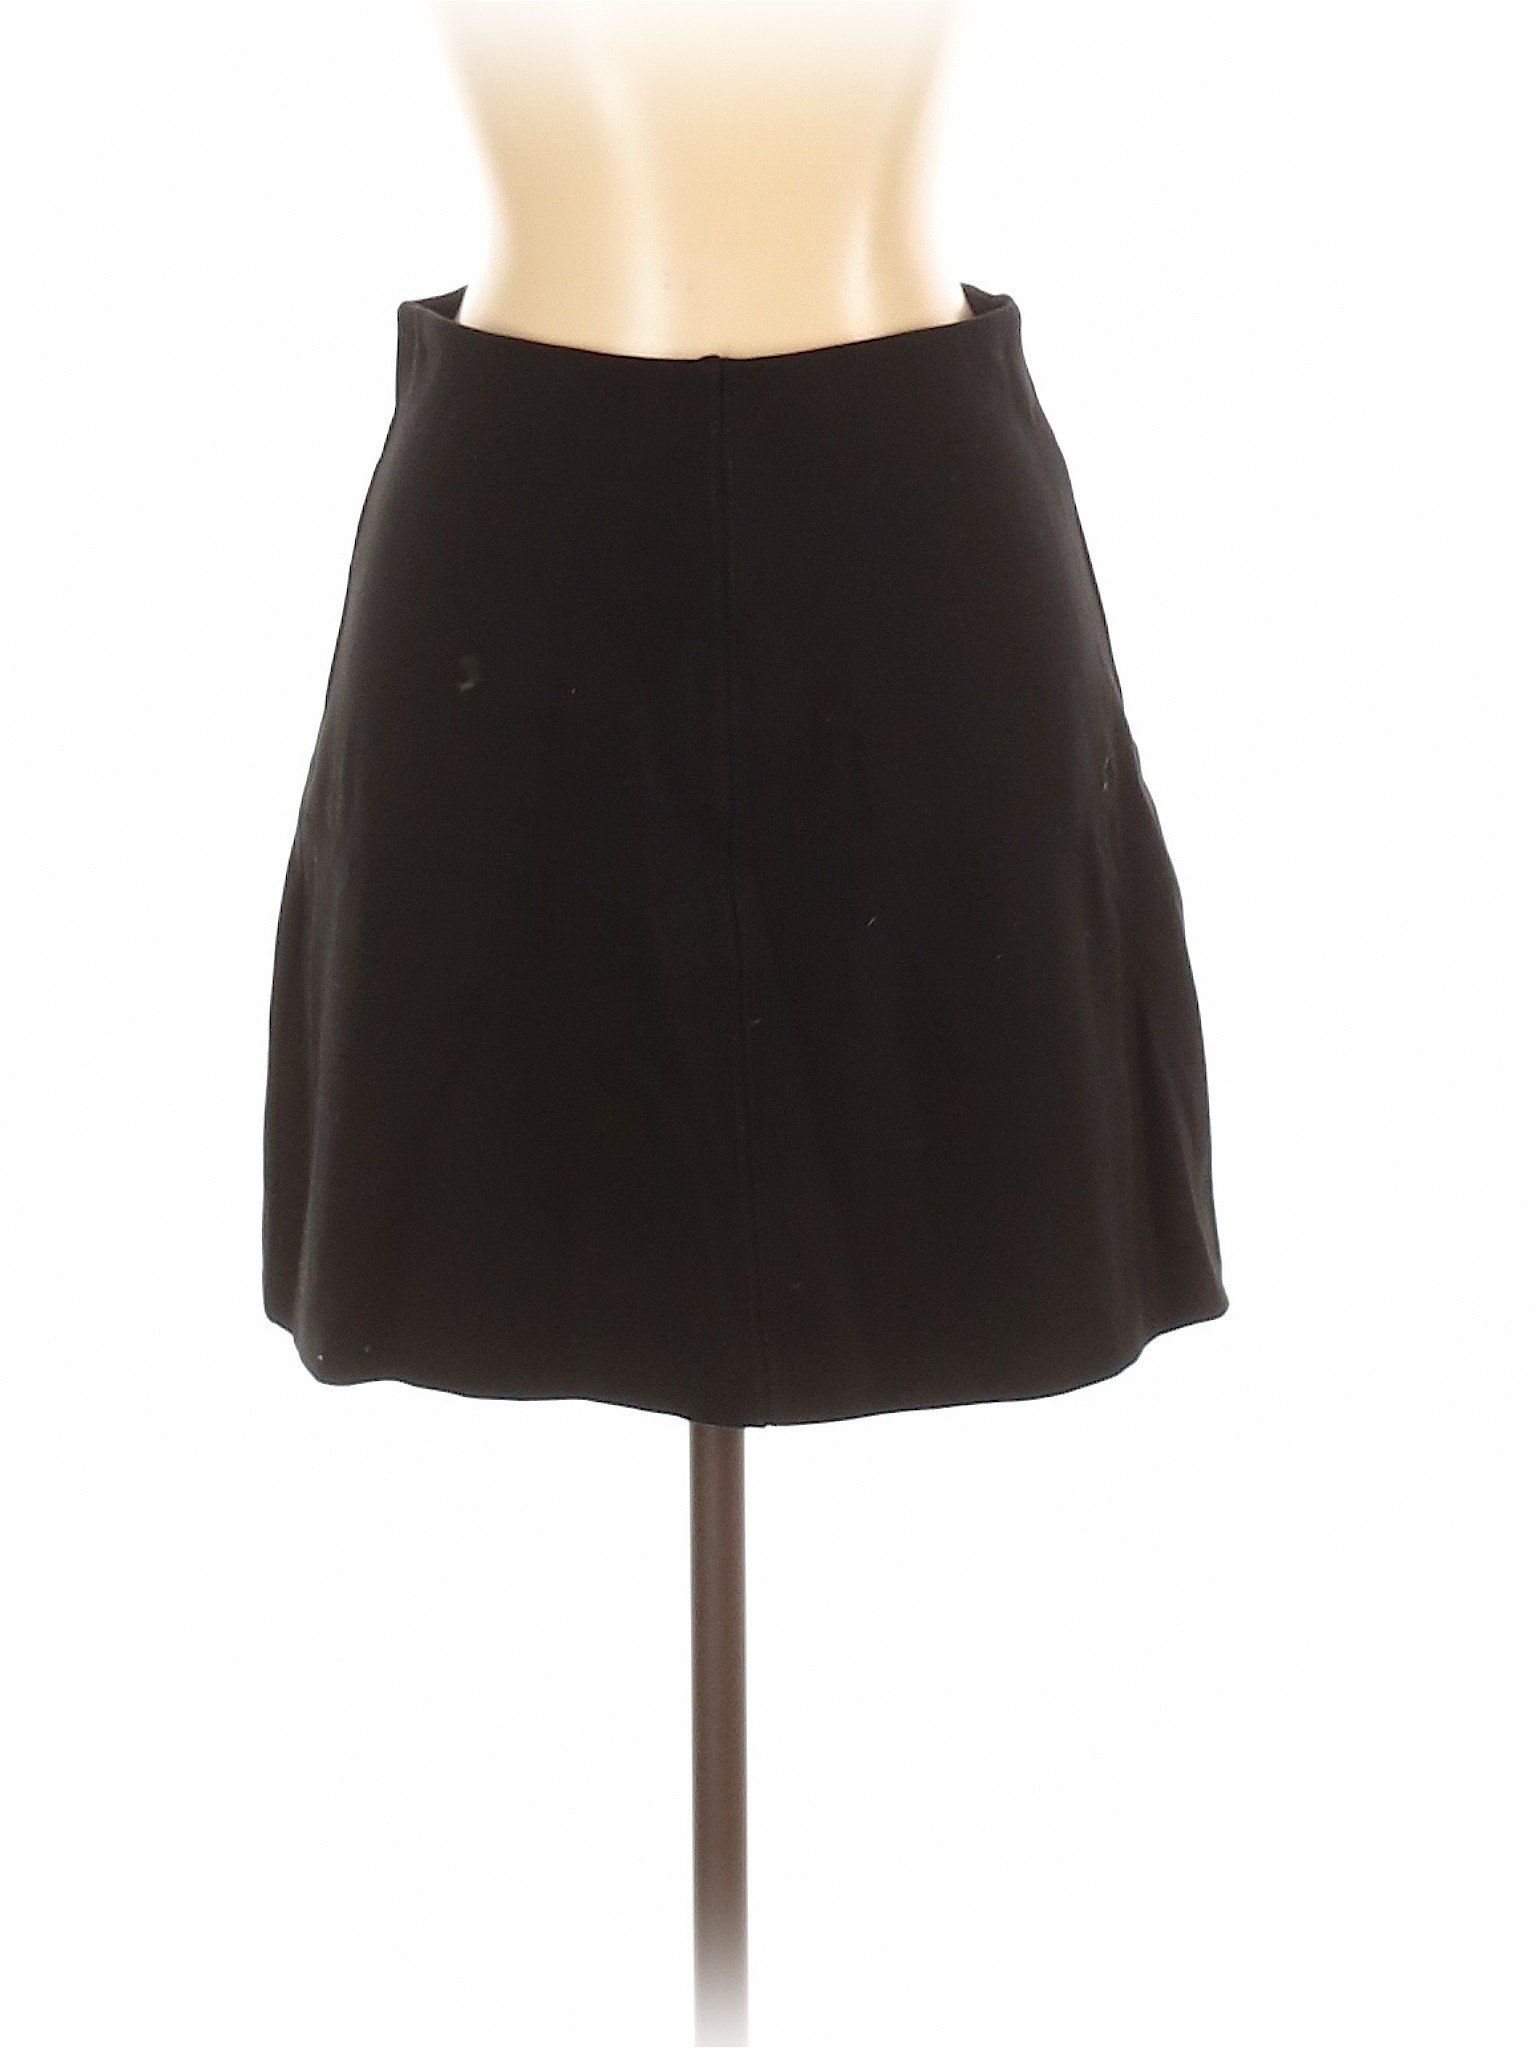 H&M Women Black Casual Skirt S | eBay